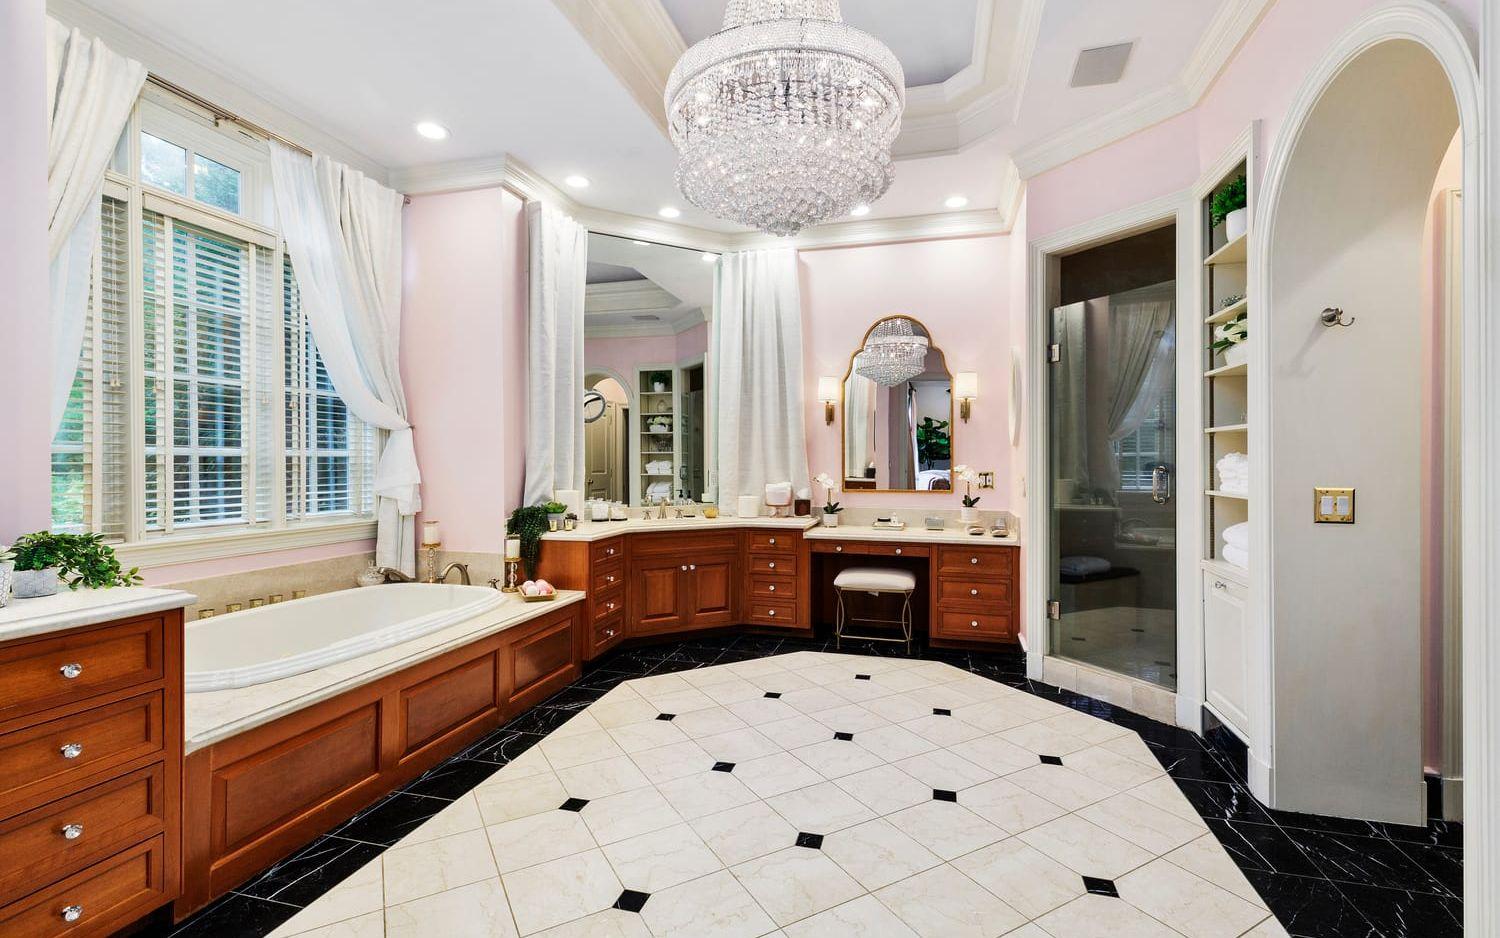 Badrummet som ligger vid hennes sovrum är stort och lyxigt. Där finns badkar, dusch, två tvättställ och en sminkplats. Allt lyses upp av en kristallkrona. Badrummet är också rosa som hennes skönhetssalong.